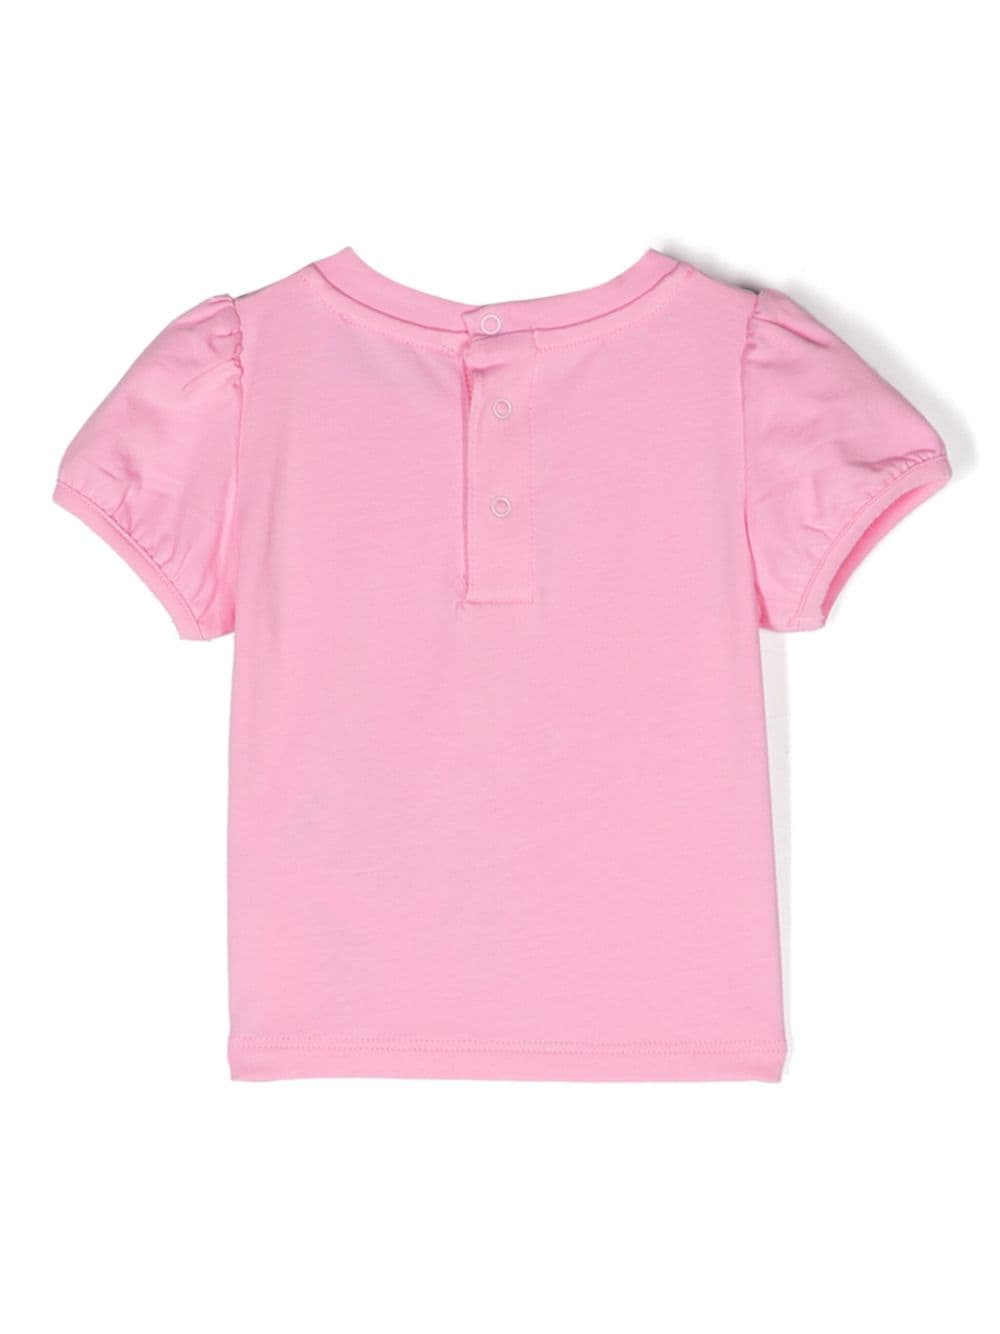 T-shirt rosa per neonata con orso